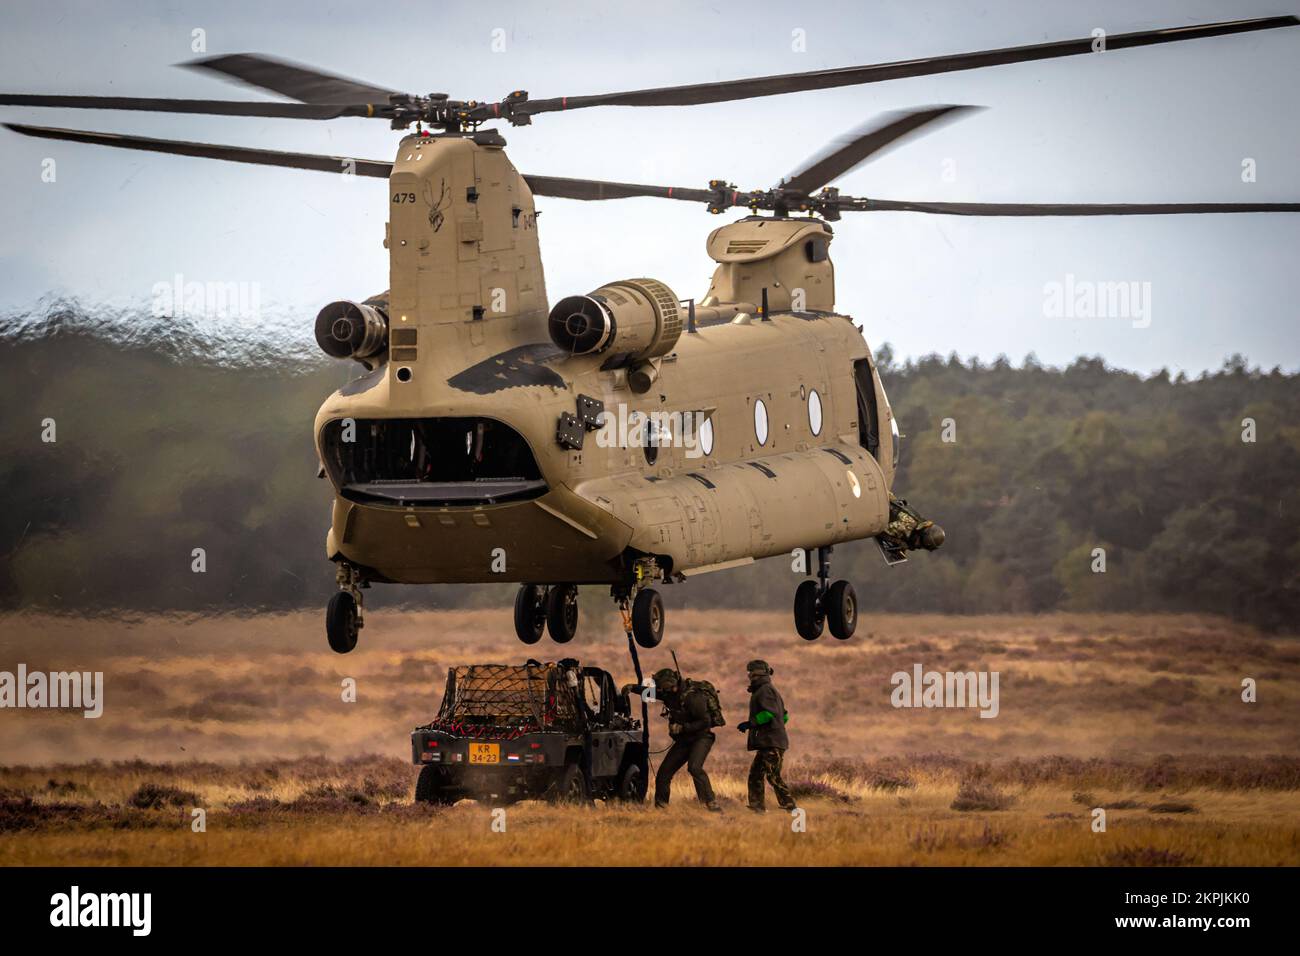 Des soldats attachant un véhicule militaire tout-terrain à un hélicoptère Boeing CH-47F Chinook. Ginkelse Heide, pays-Bas - 17 septembre 2022 Banque D'Images